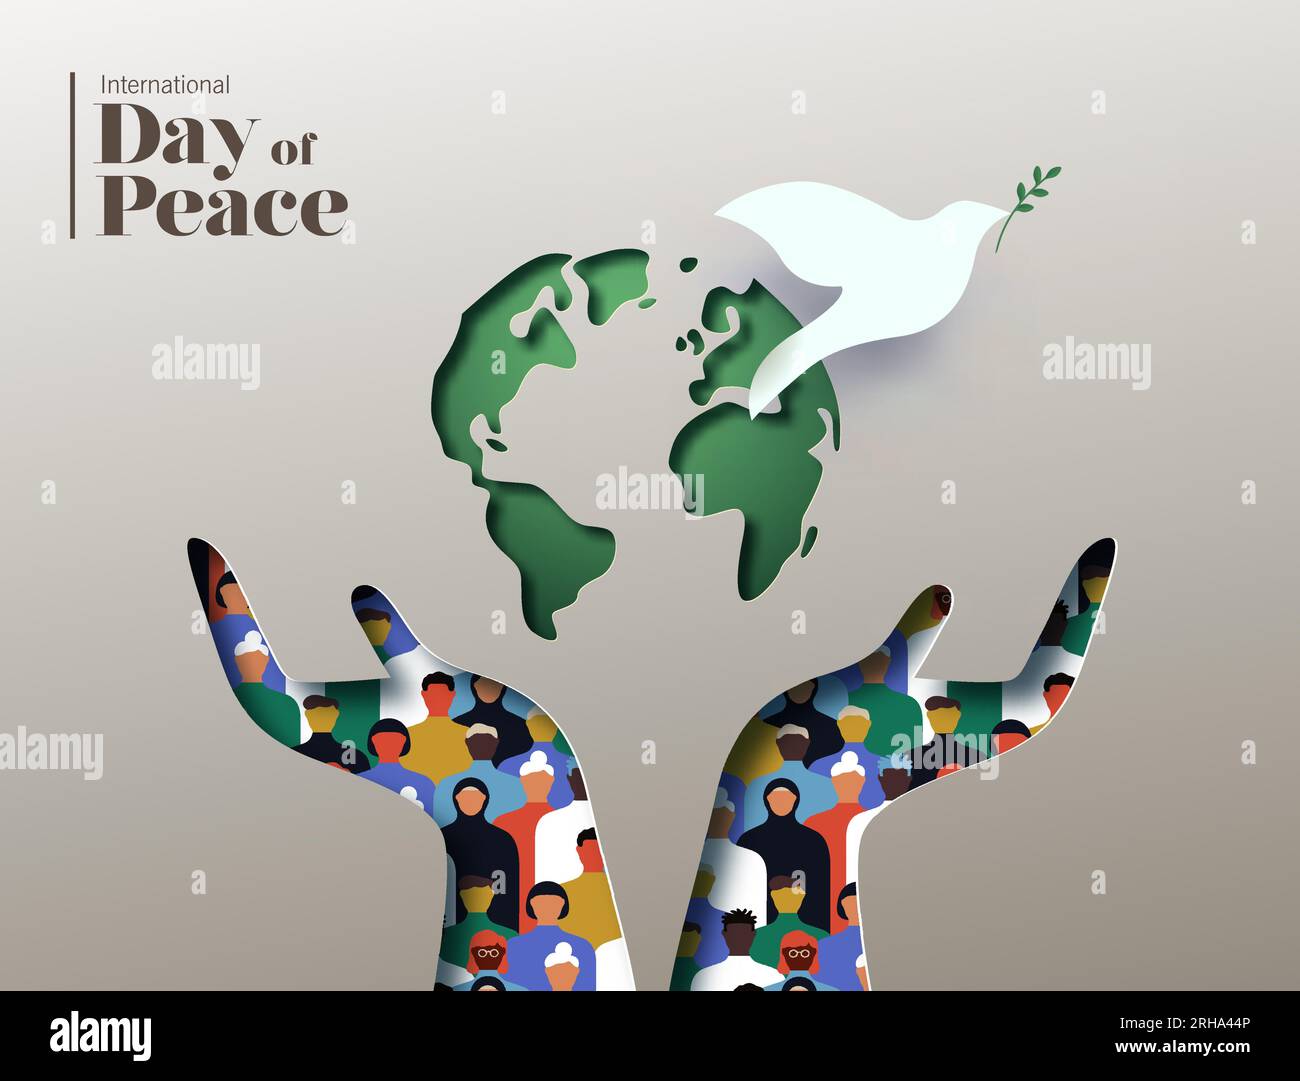 Illustrazione della carta vettoriale della giornata internazionale della pace. Mani con persone diverse raggruppate all'interno con il design papercut, la mappa del mondo e il simbolo della colomba bianca Illustrazione Vettoriale